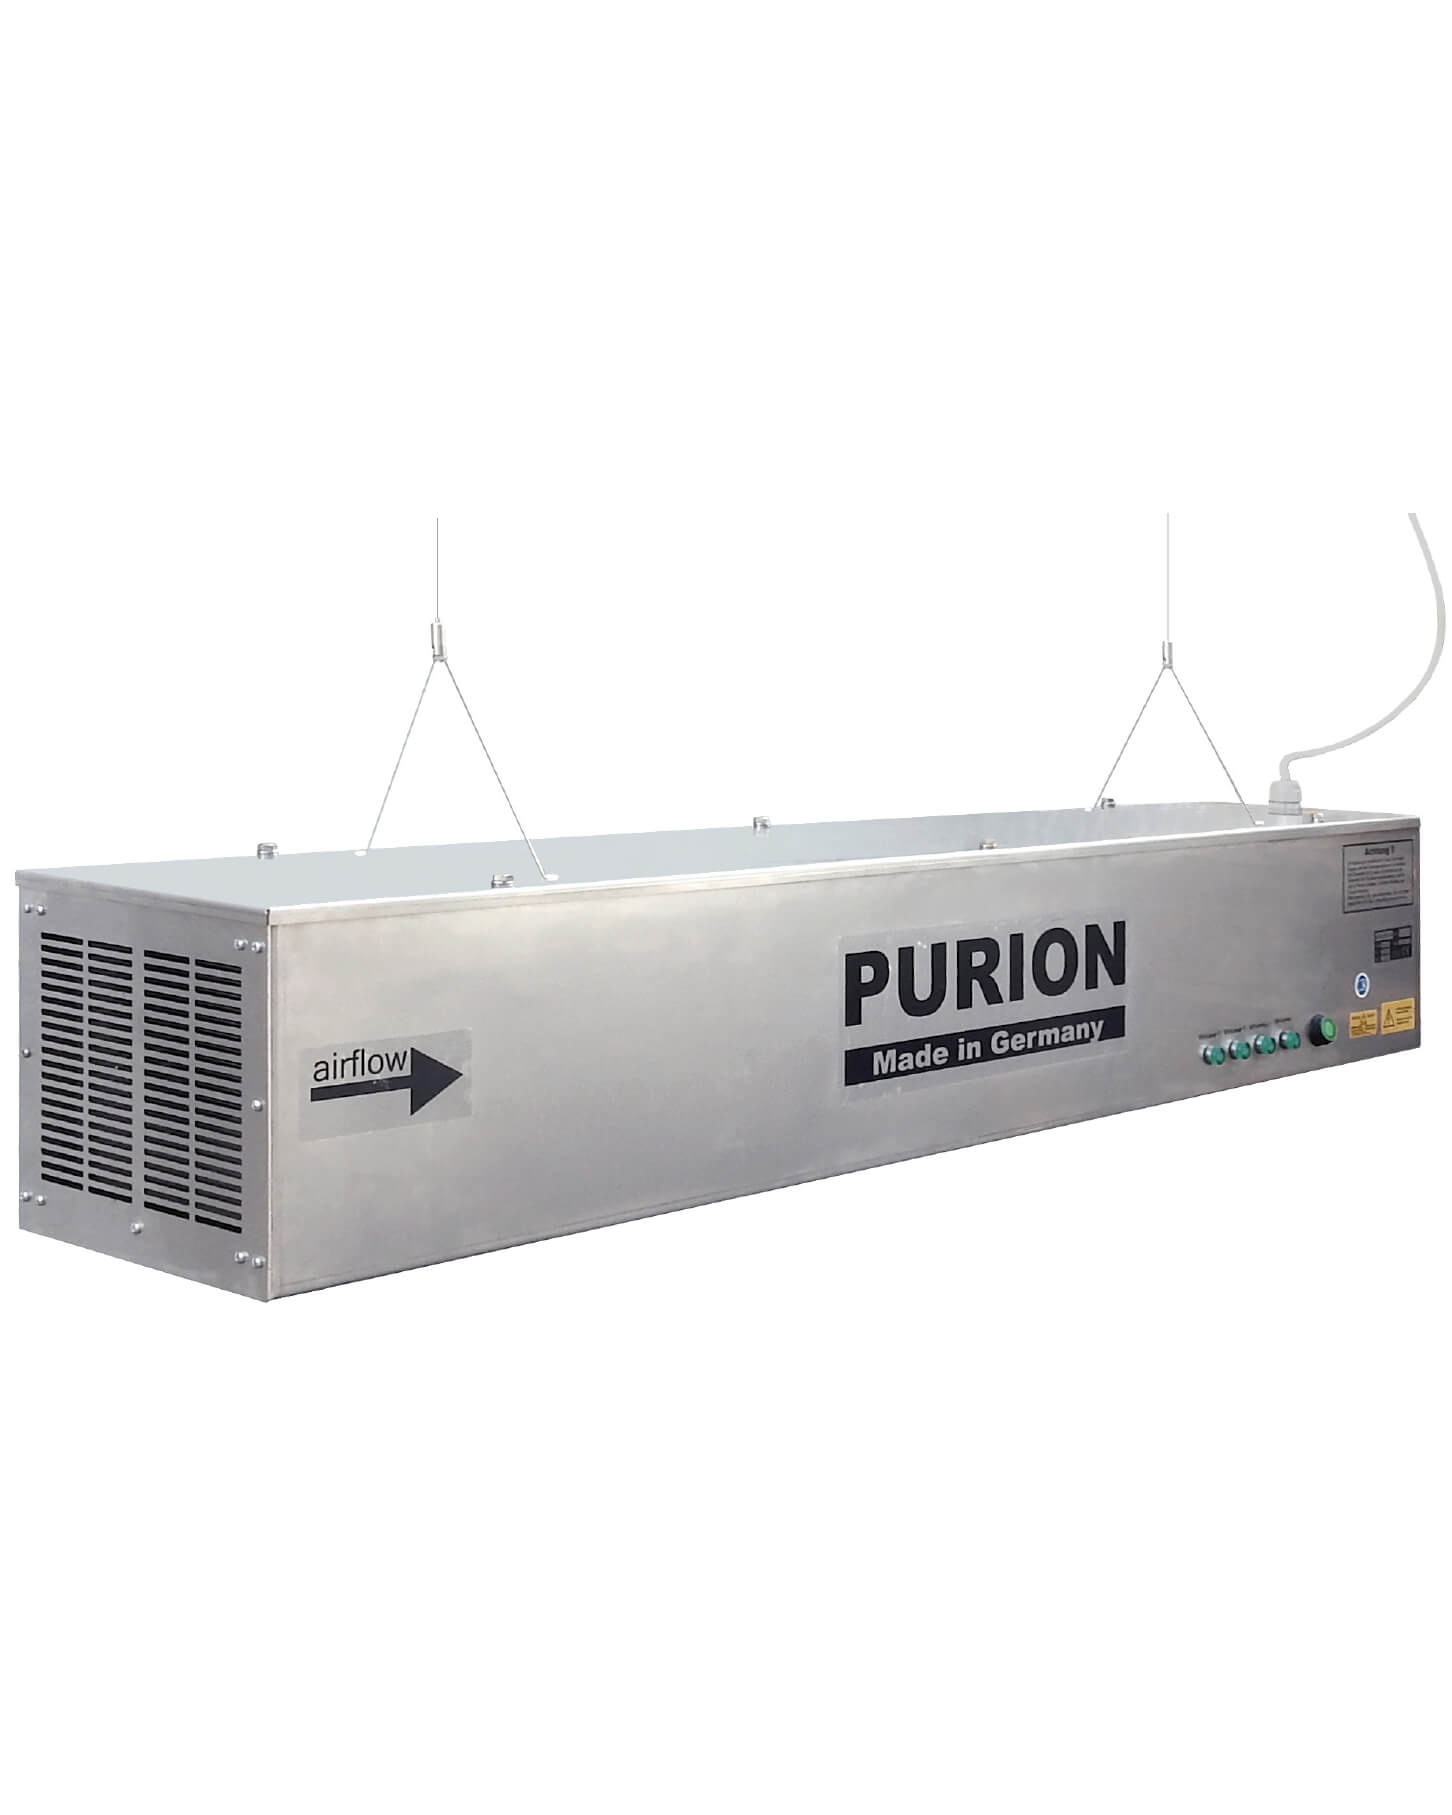 Das Produkt der PURION GmbH, das AIRPURION 400 active, sorgt für Luftkeimung gesunder Innenraume.